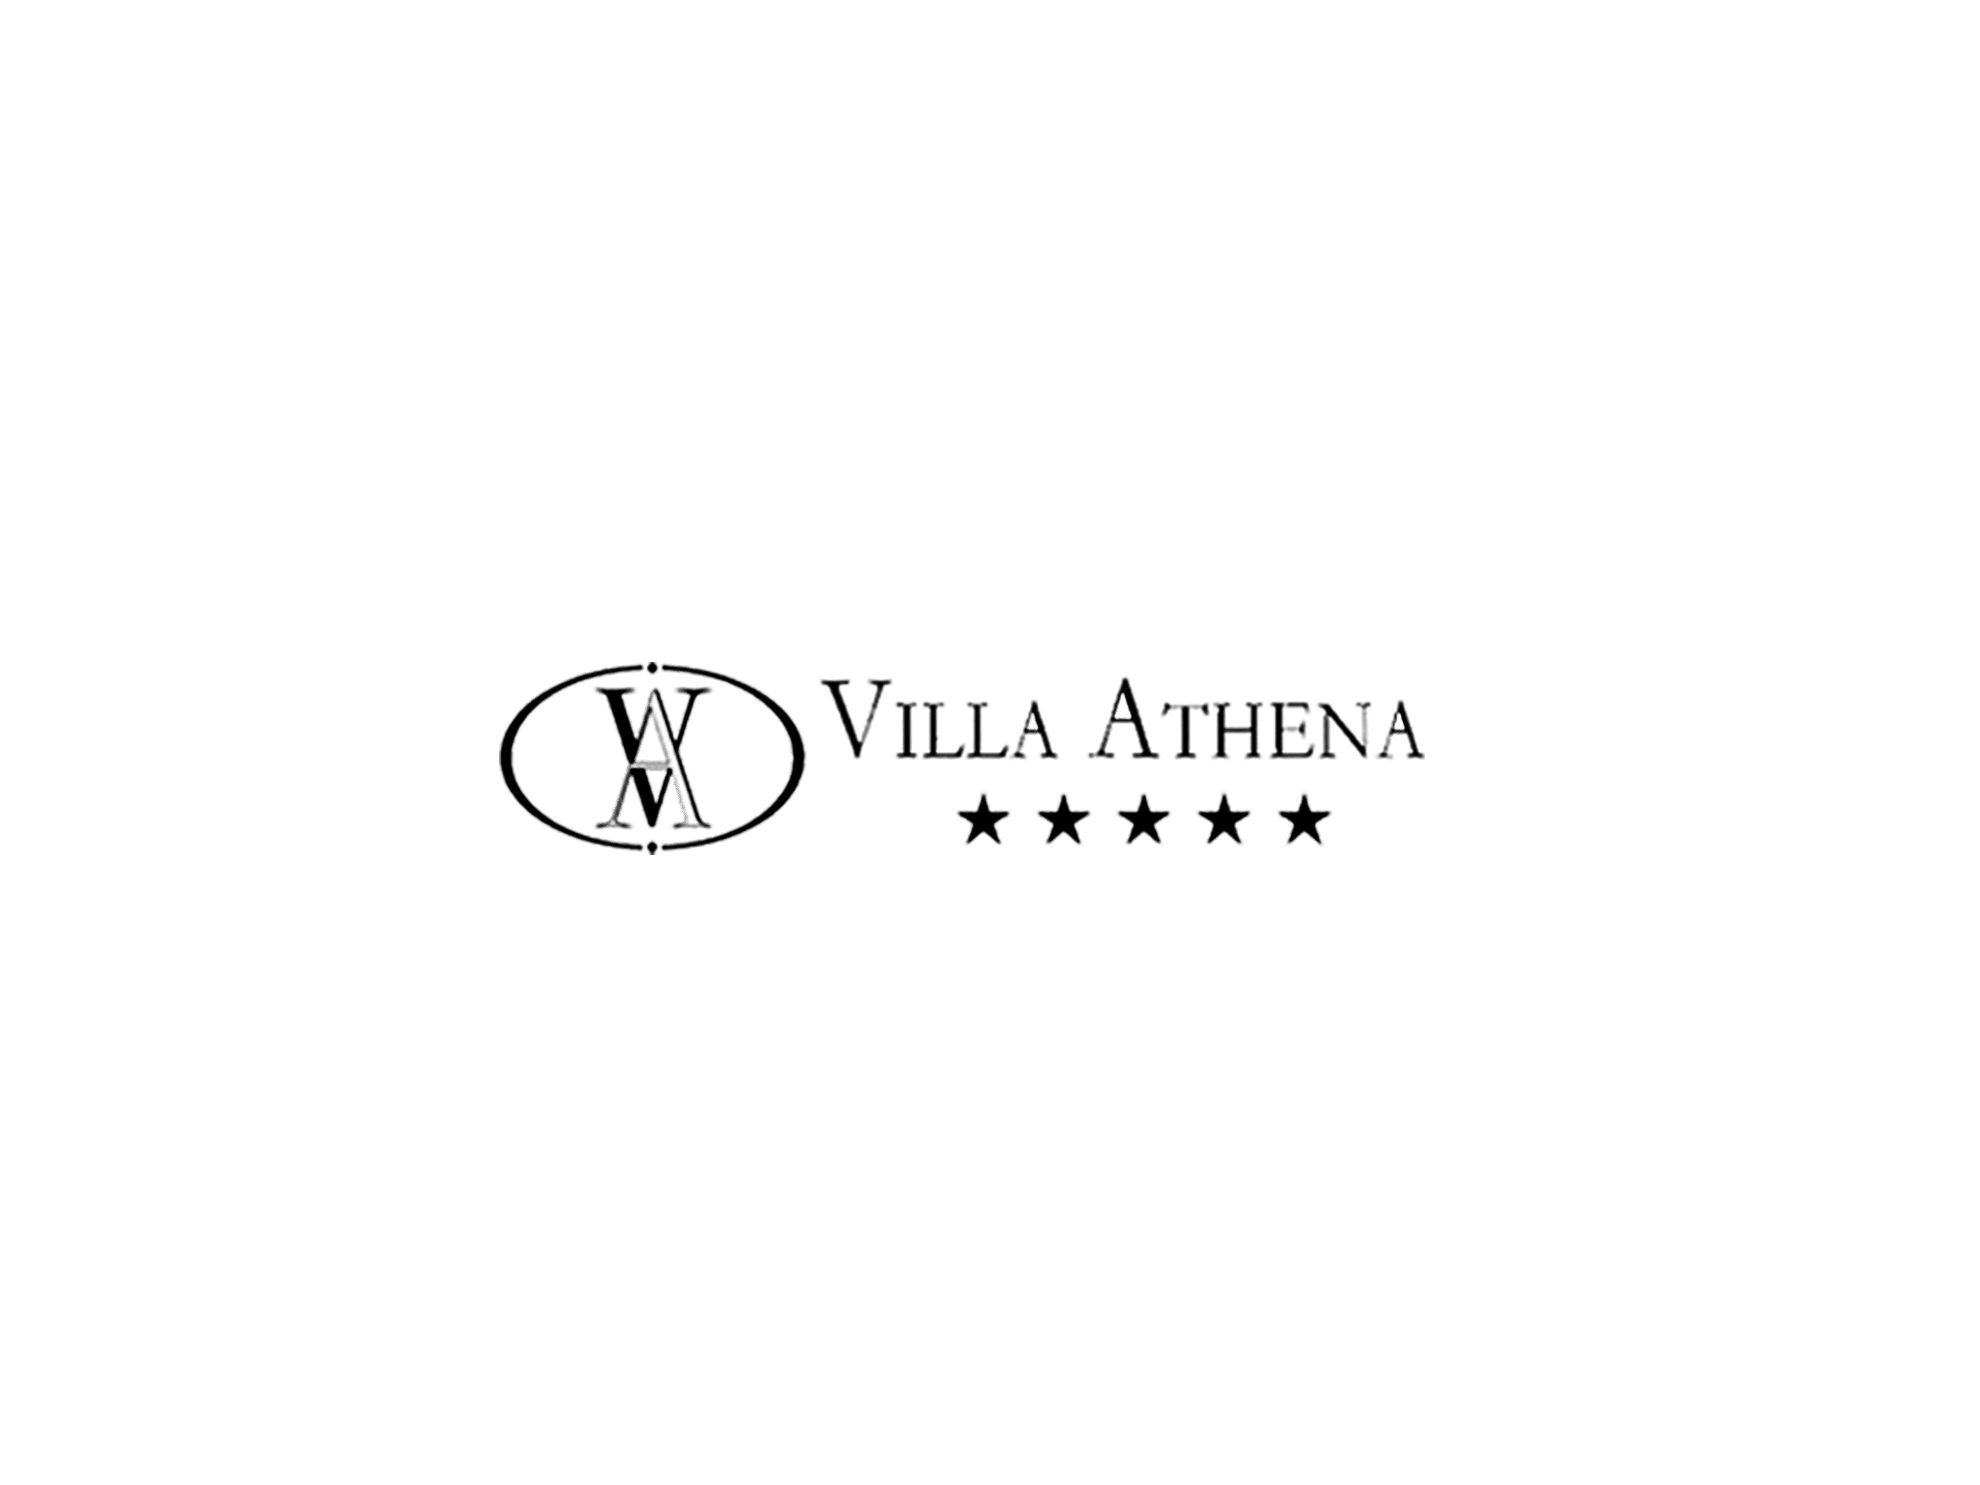 villa athena - lascia - agenzia di comunicazione Milano